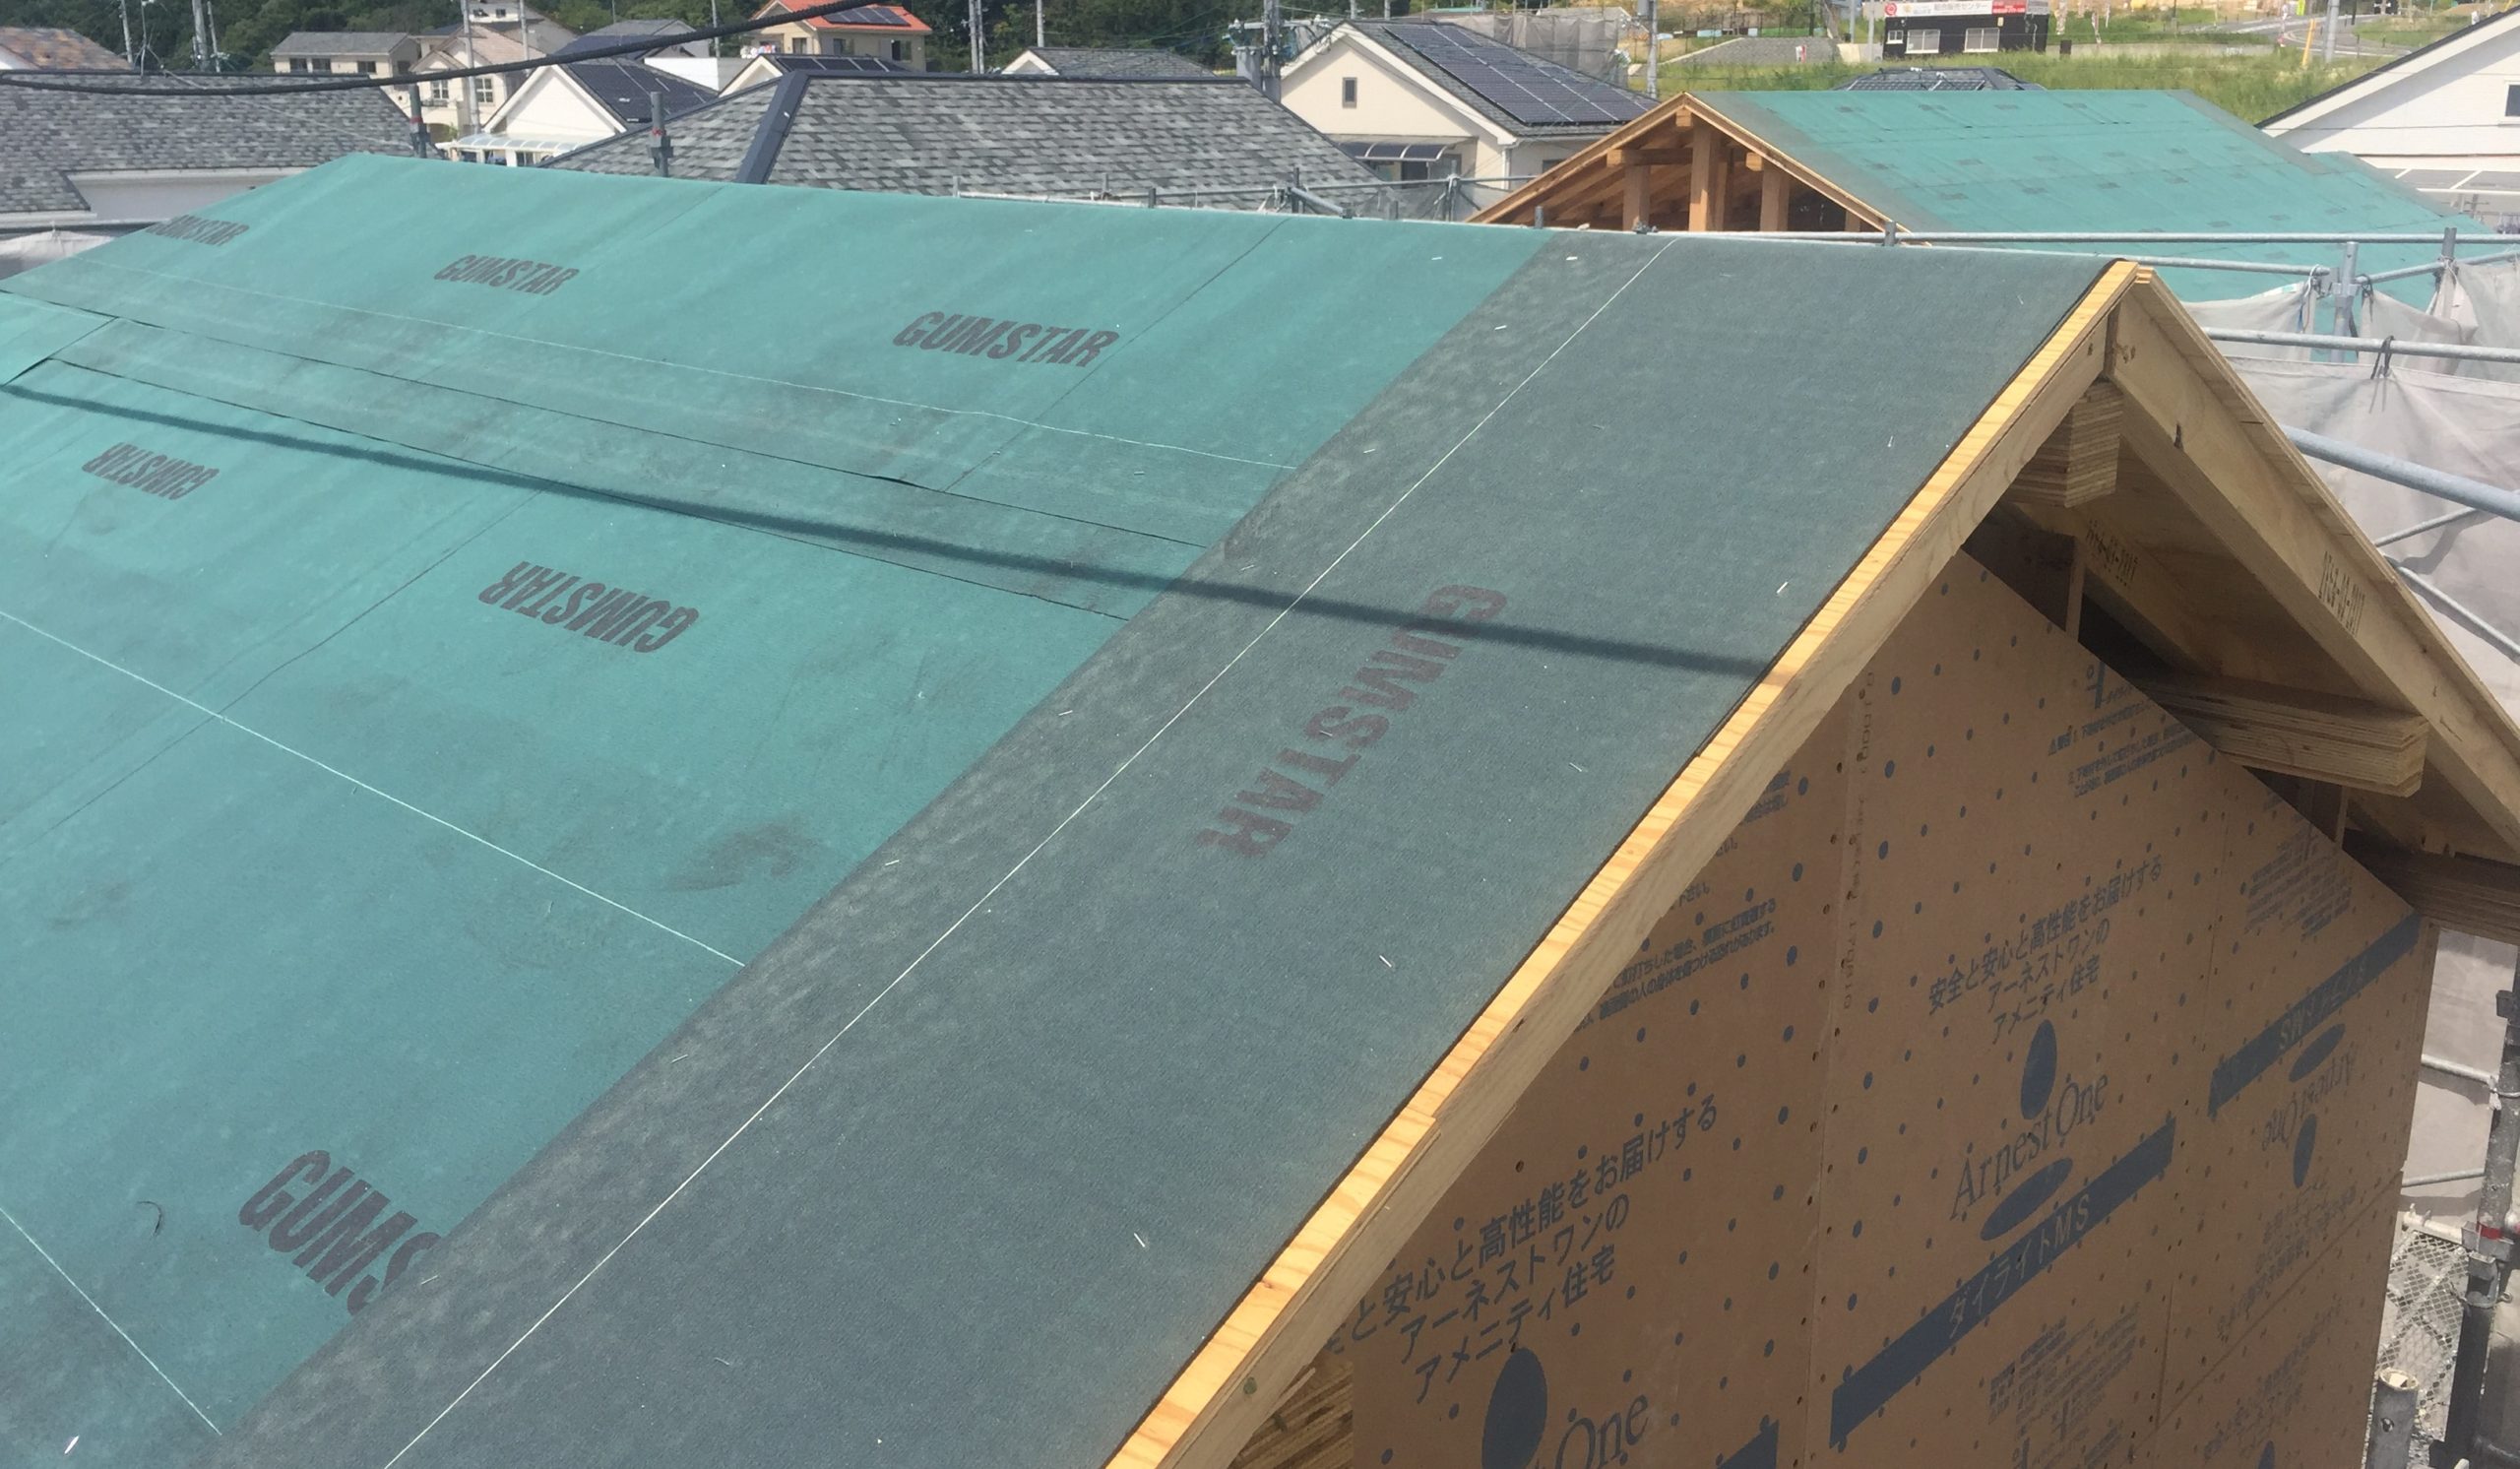 アーネストワンの屋根材はアスファルトシングル 建売住宅の屋根材